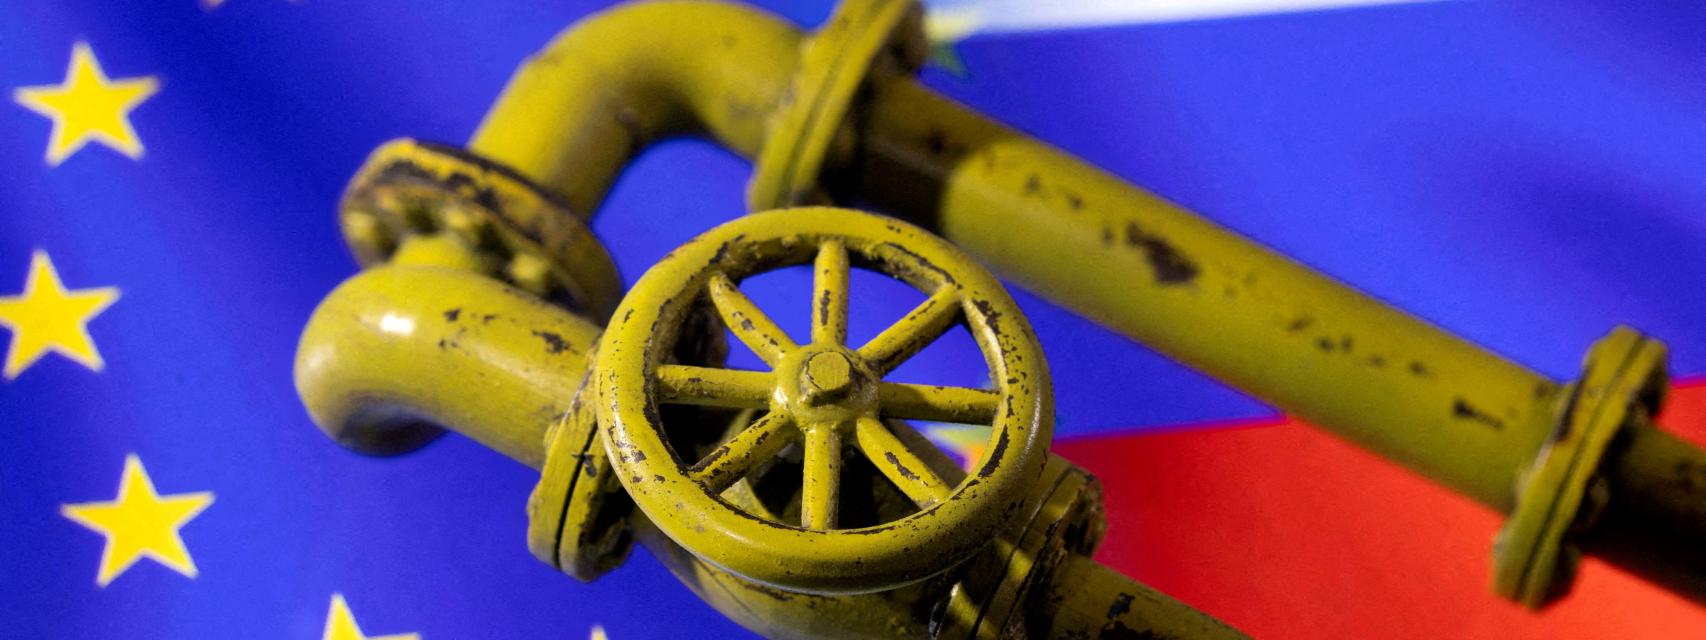 Rusia suspende el envío de gas a Europa a través del gasoducto polaco Yamal.